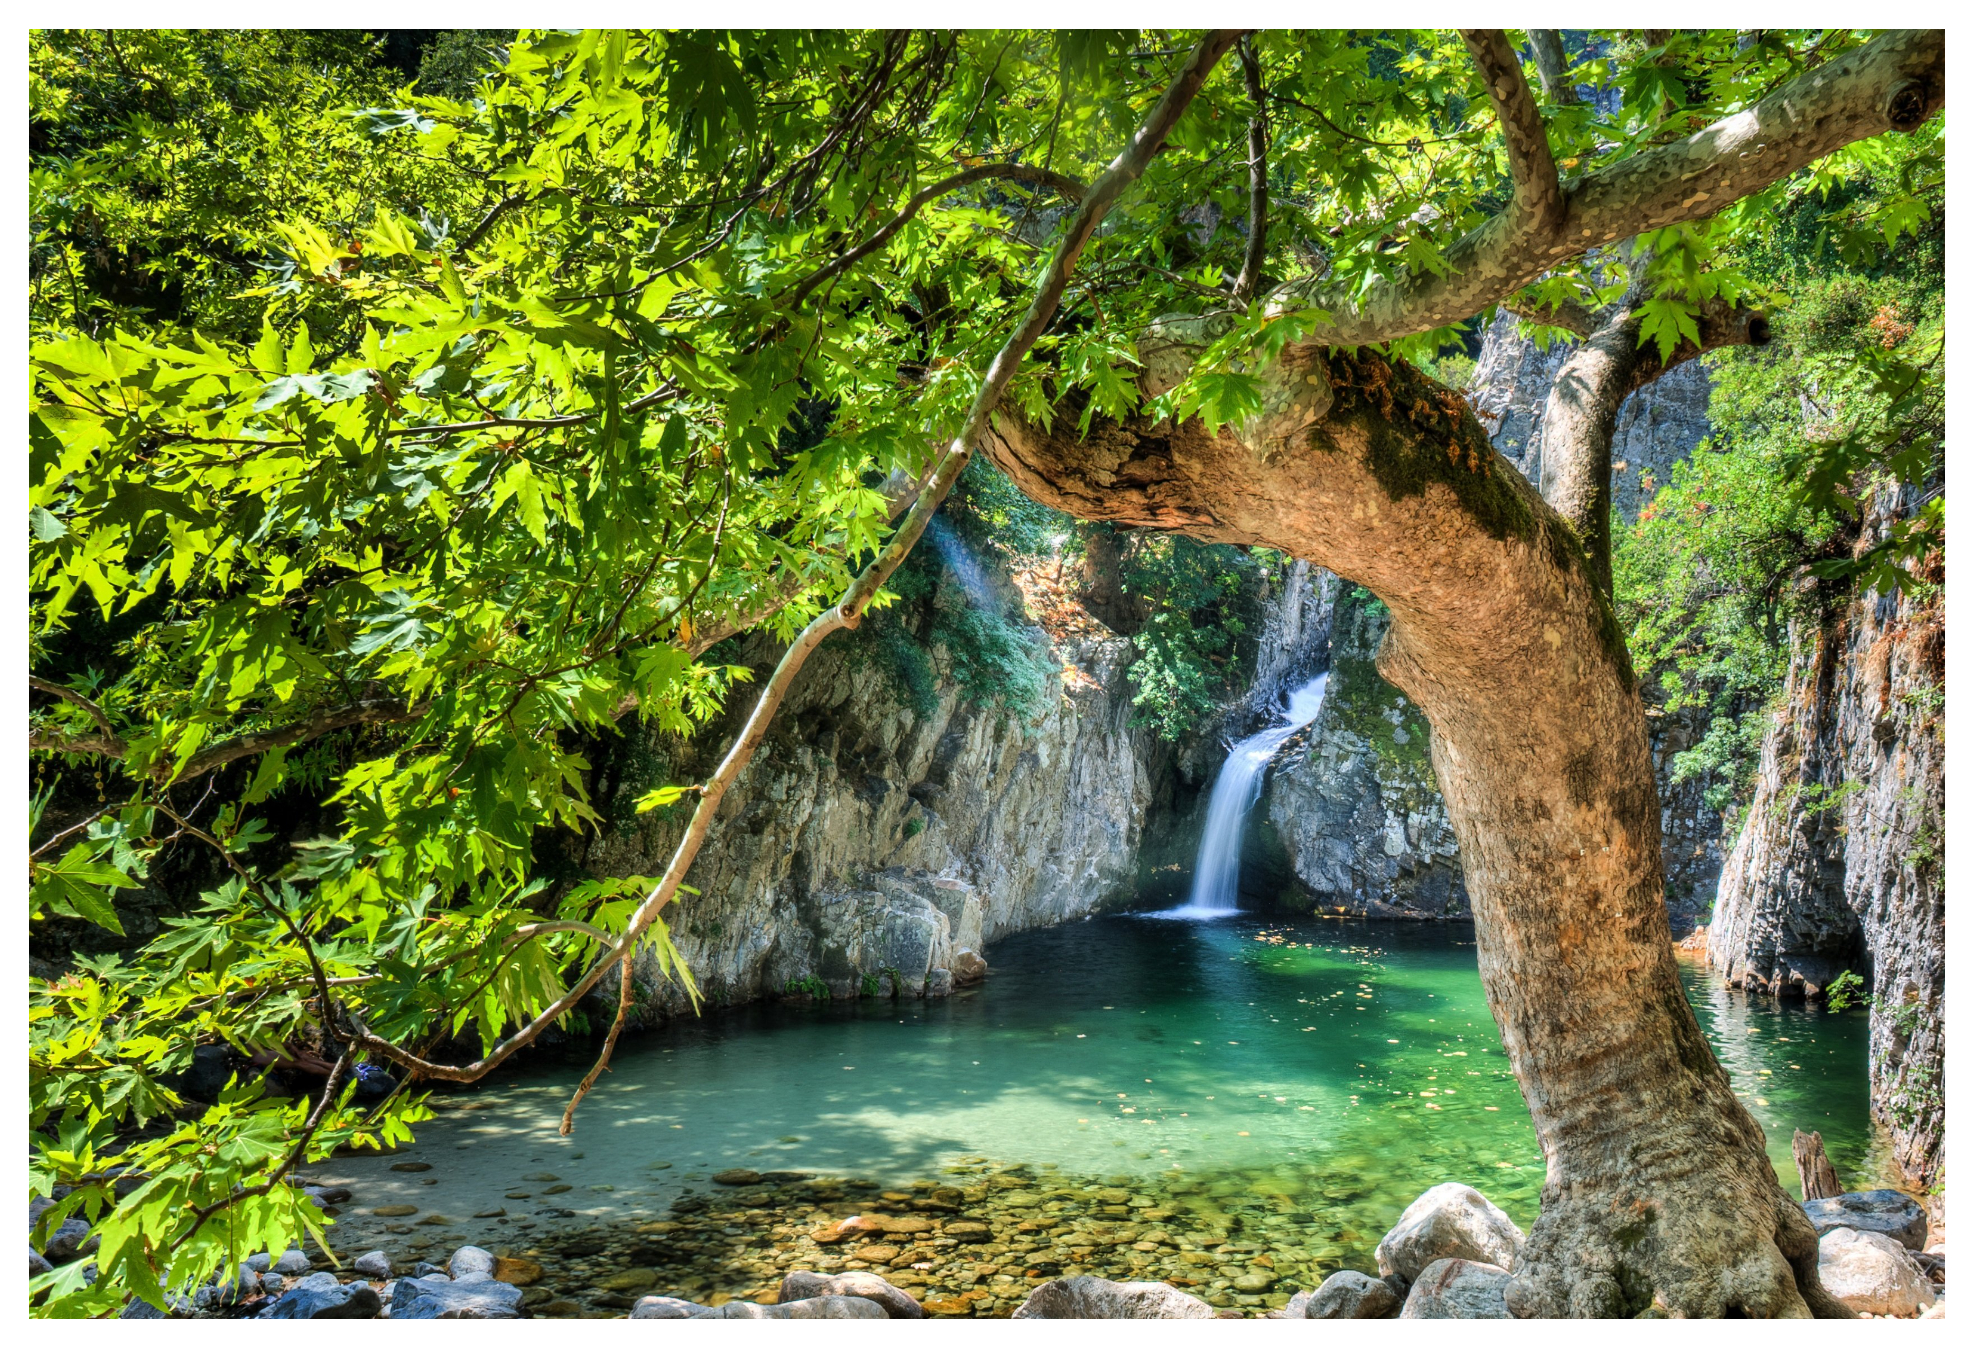 Τα 6 ελληνικά νησιά για οικονομικές διακοπές φέτος το καλοκαίρι